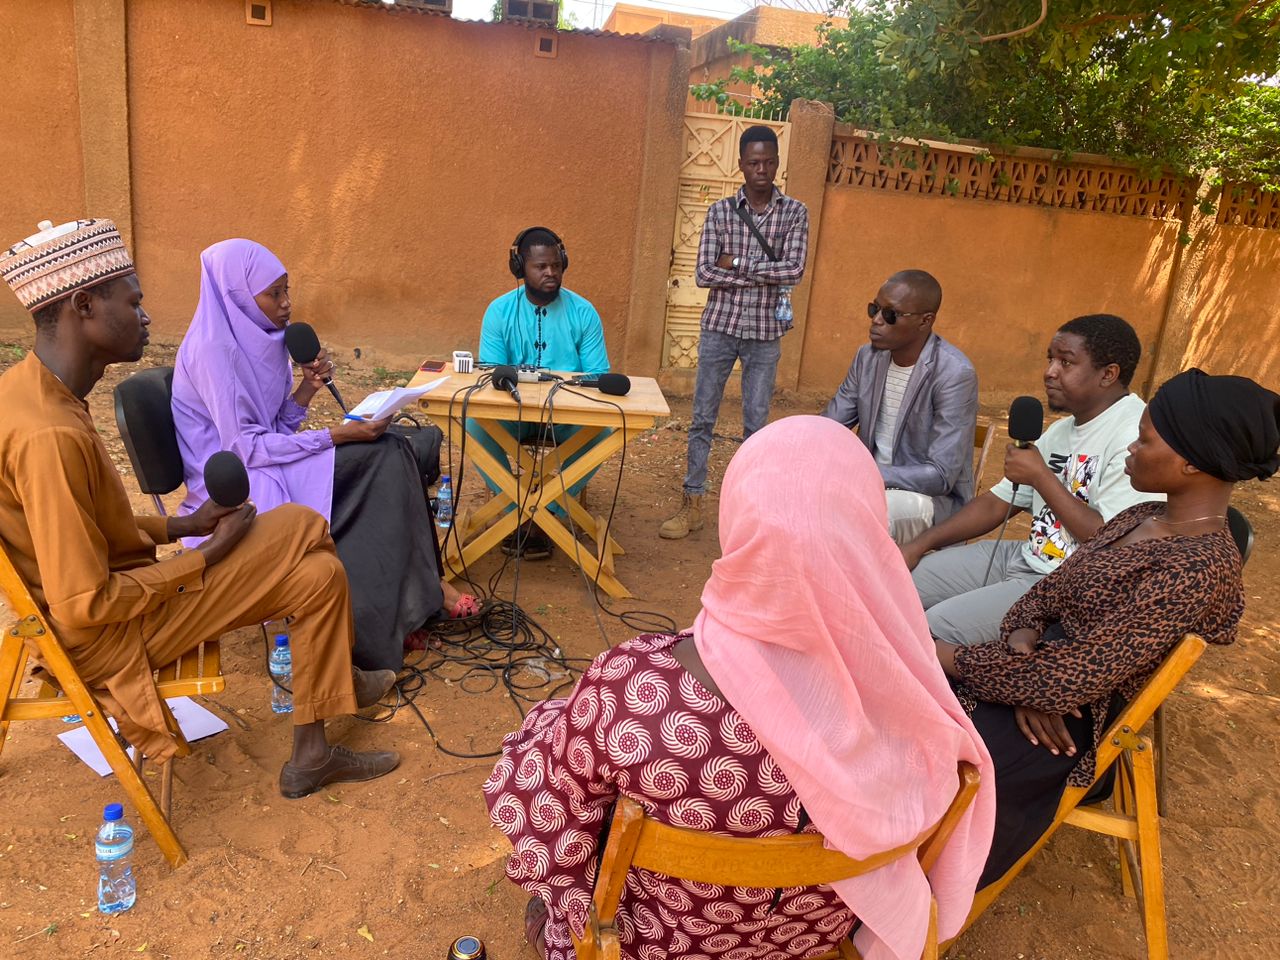 Comment les jeunes journalistes travaillent ils au Niger après le coup d’Etat ?